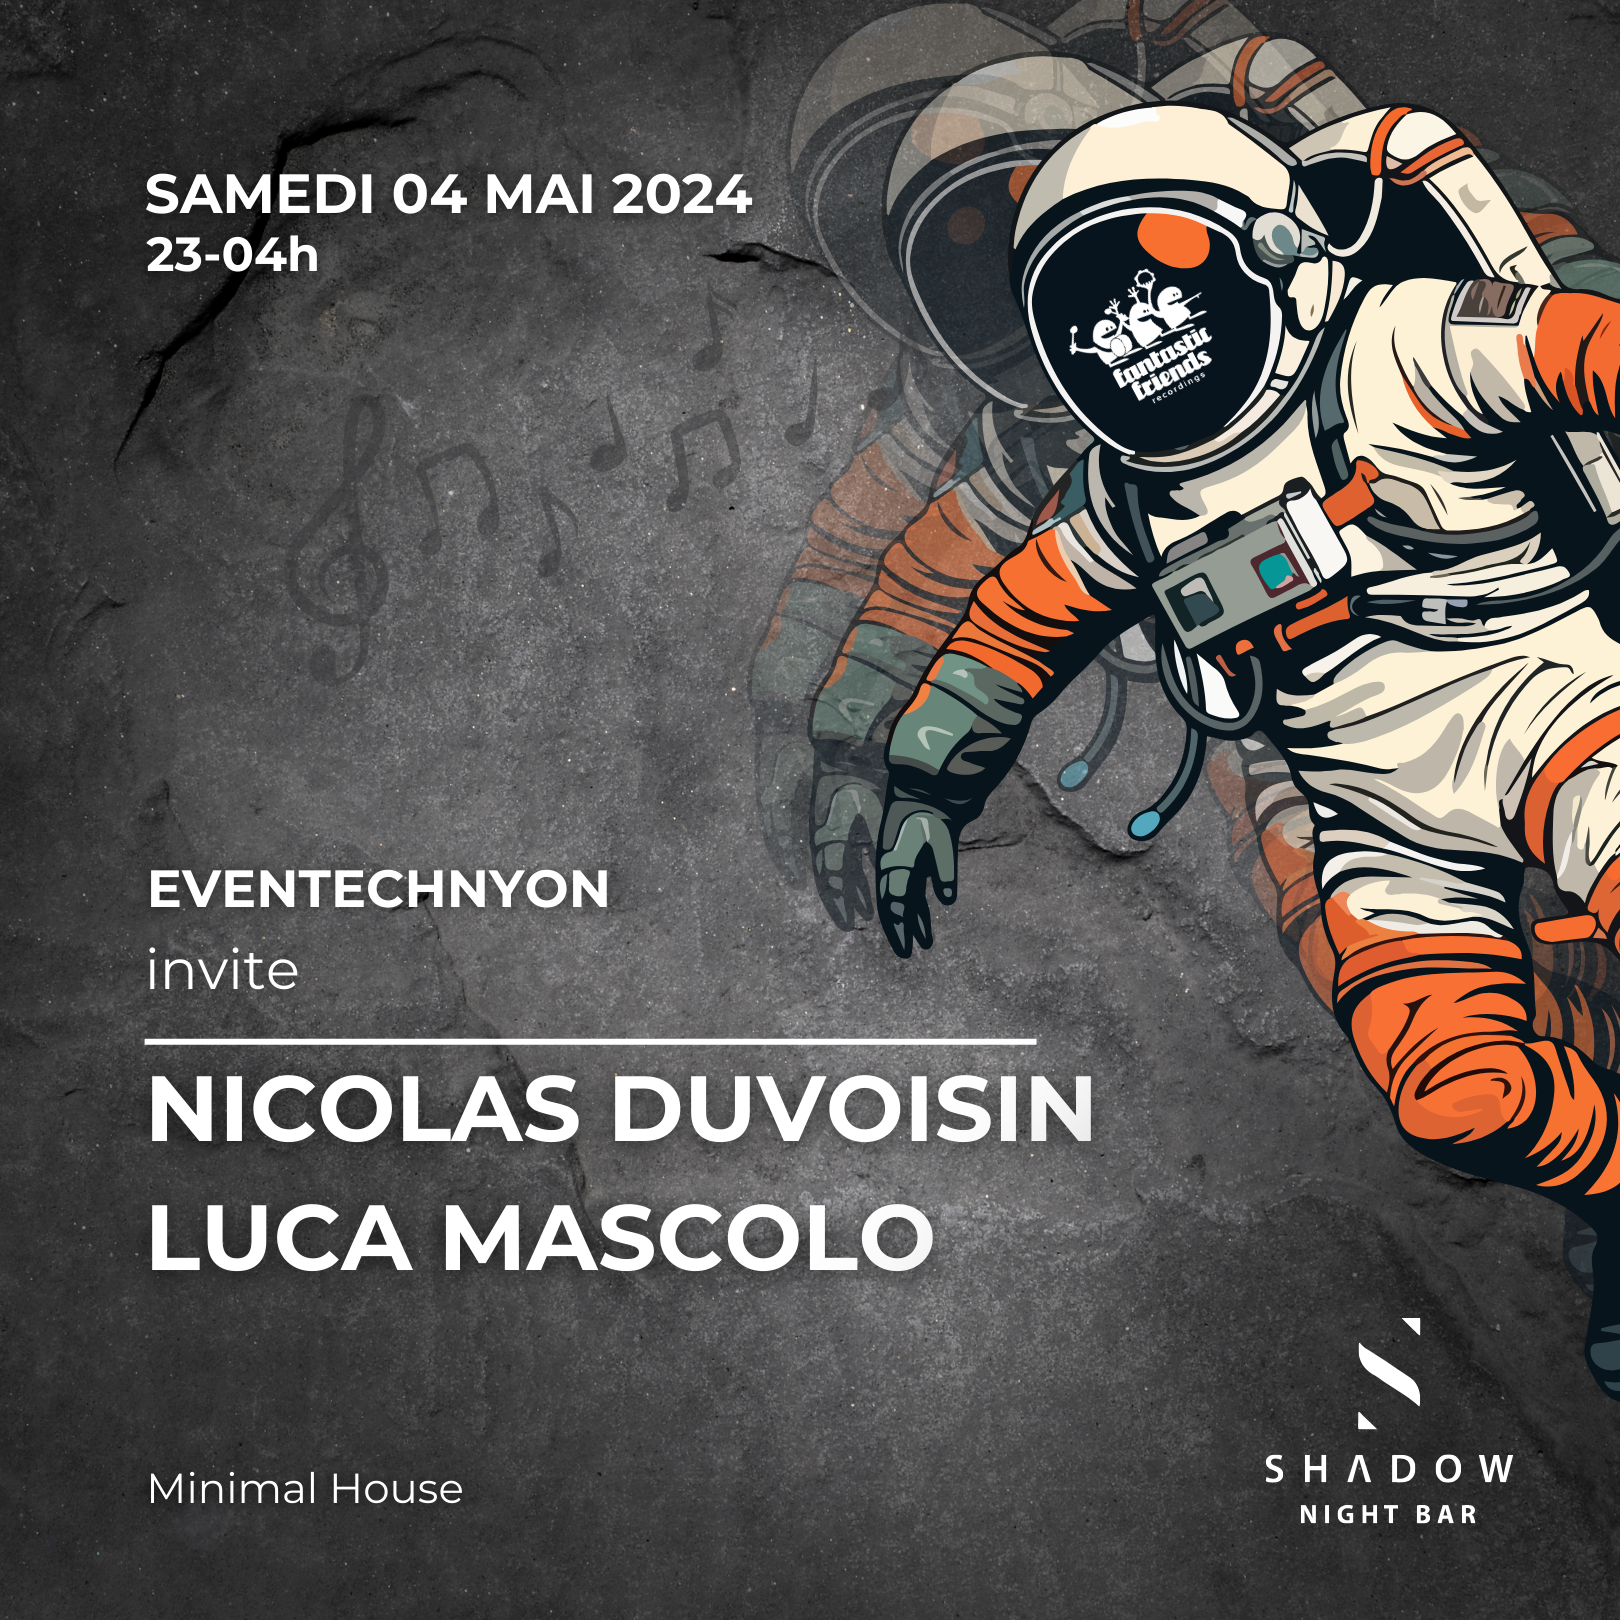 04.05.2024 > Eventechnyon at Shadow - W/ Nicolas Duvoisin & Luca Mascolo